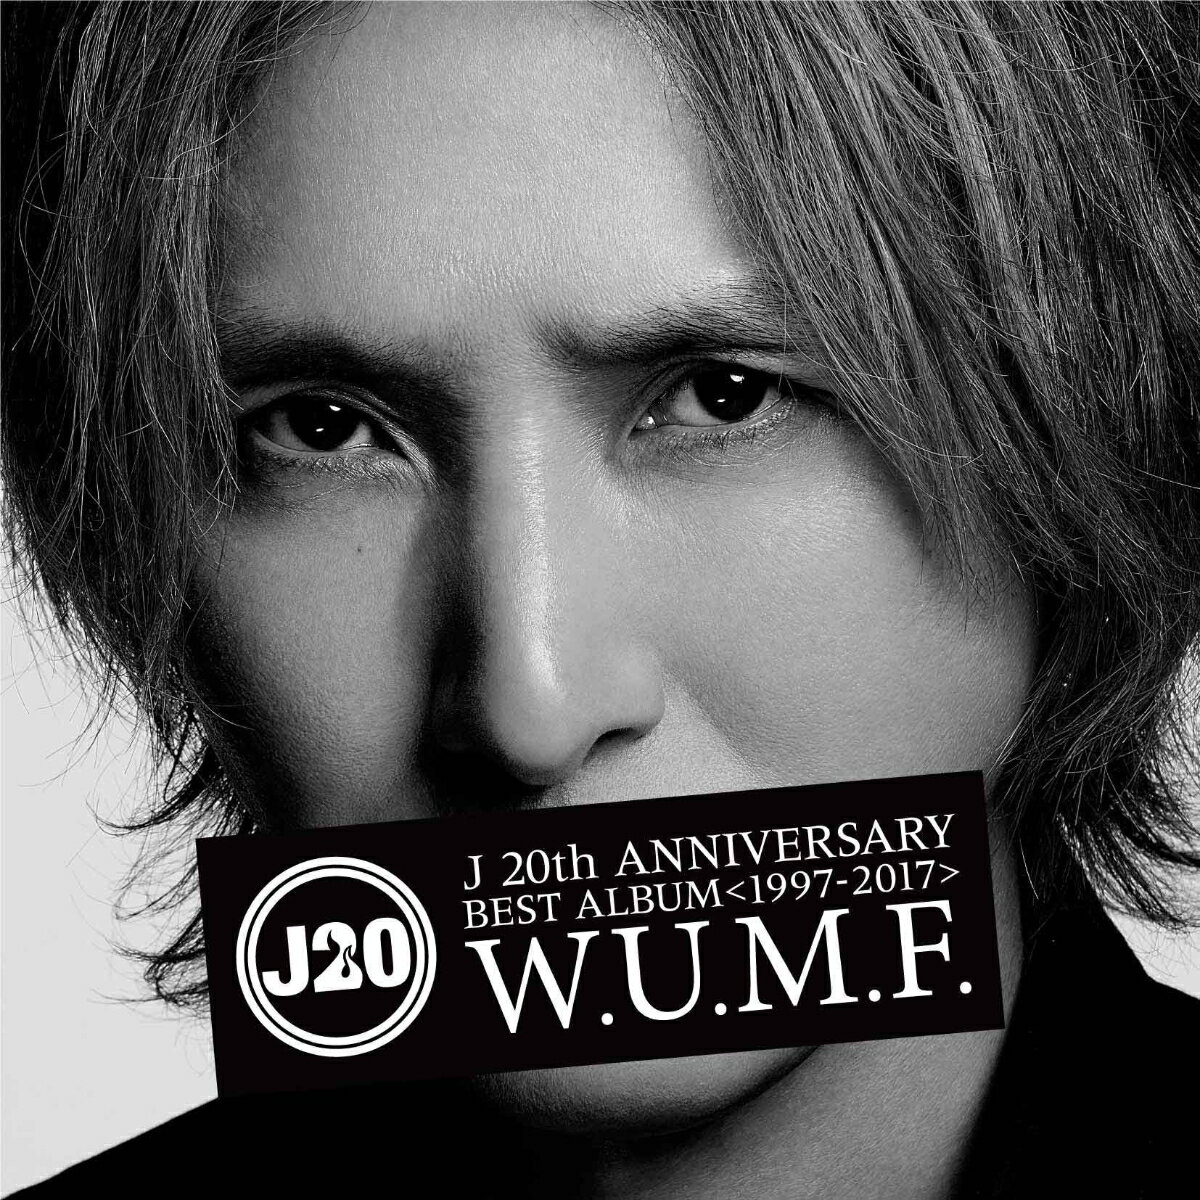 J 20th Anniversary BEST ALBUM ＜1997-2017＞ W.U.M.F.